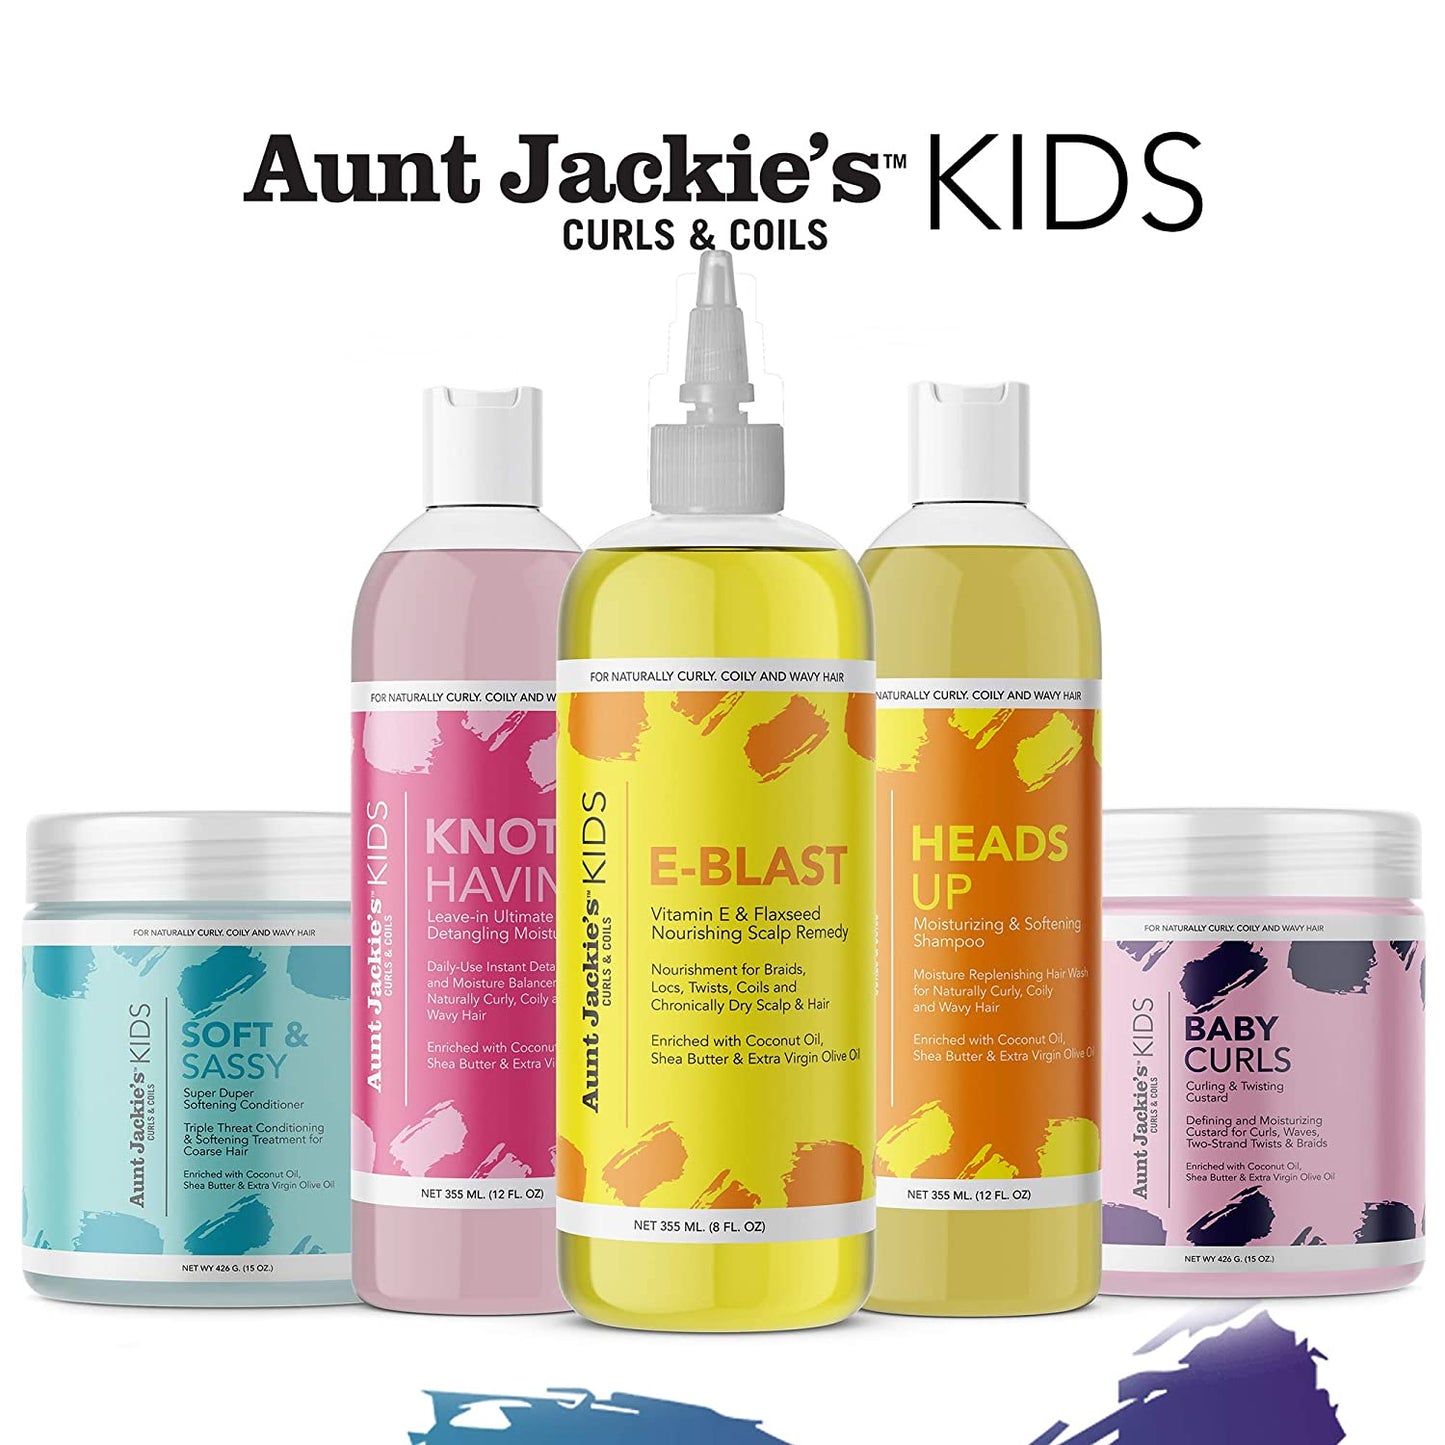 Aunt Jackie's Girls Heads Up Moisturizing & Softening Shampoo, 355 ml